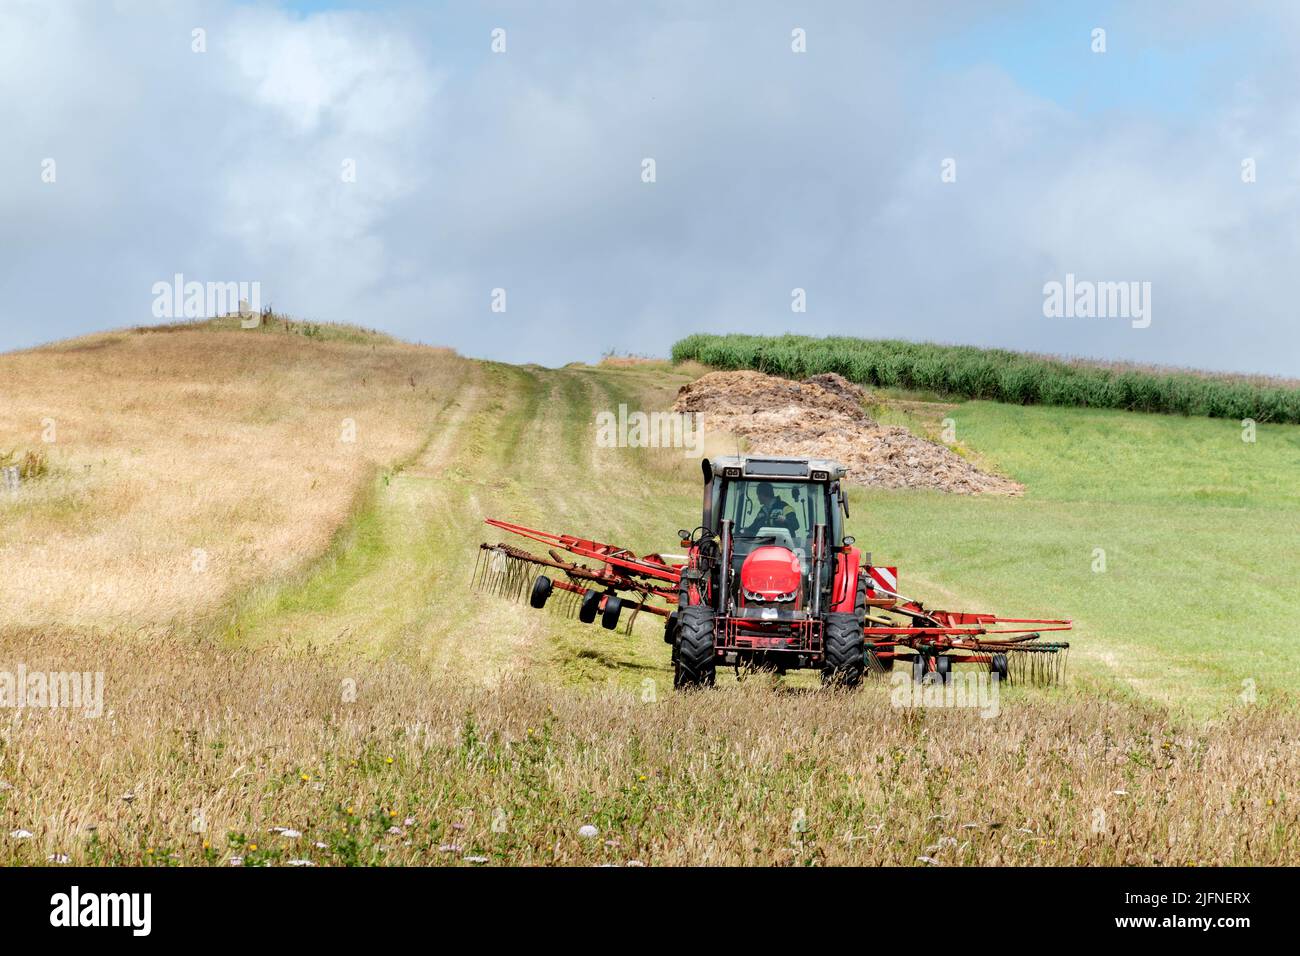 Un tracteur travaillant dans un champ d'herbe fraîchement coupée sèche tire un râteau mécanique avant que l'herbe ne soit ramassé et regroupée pour produire du foin Banque D'Images